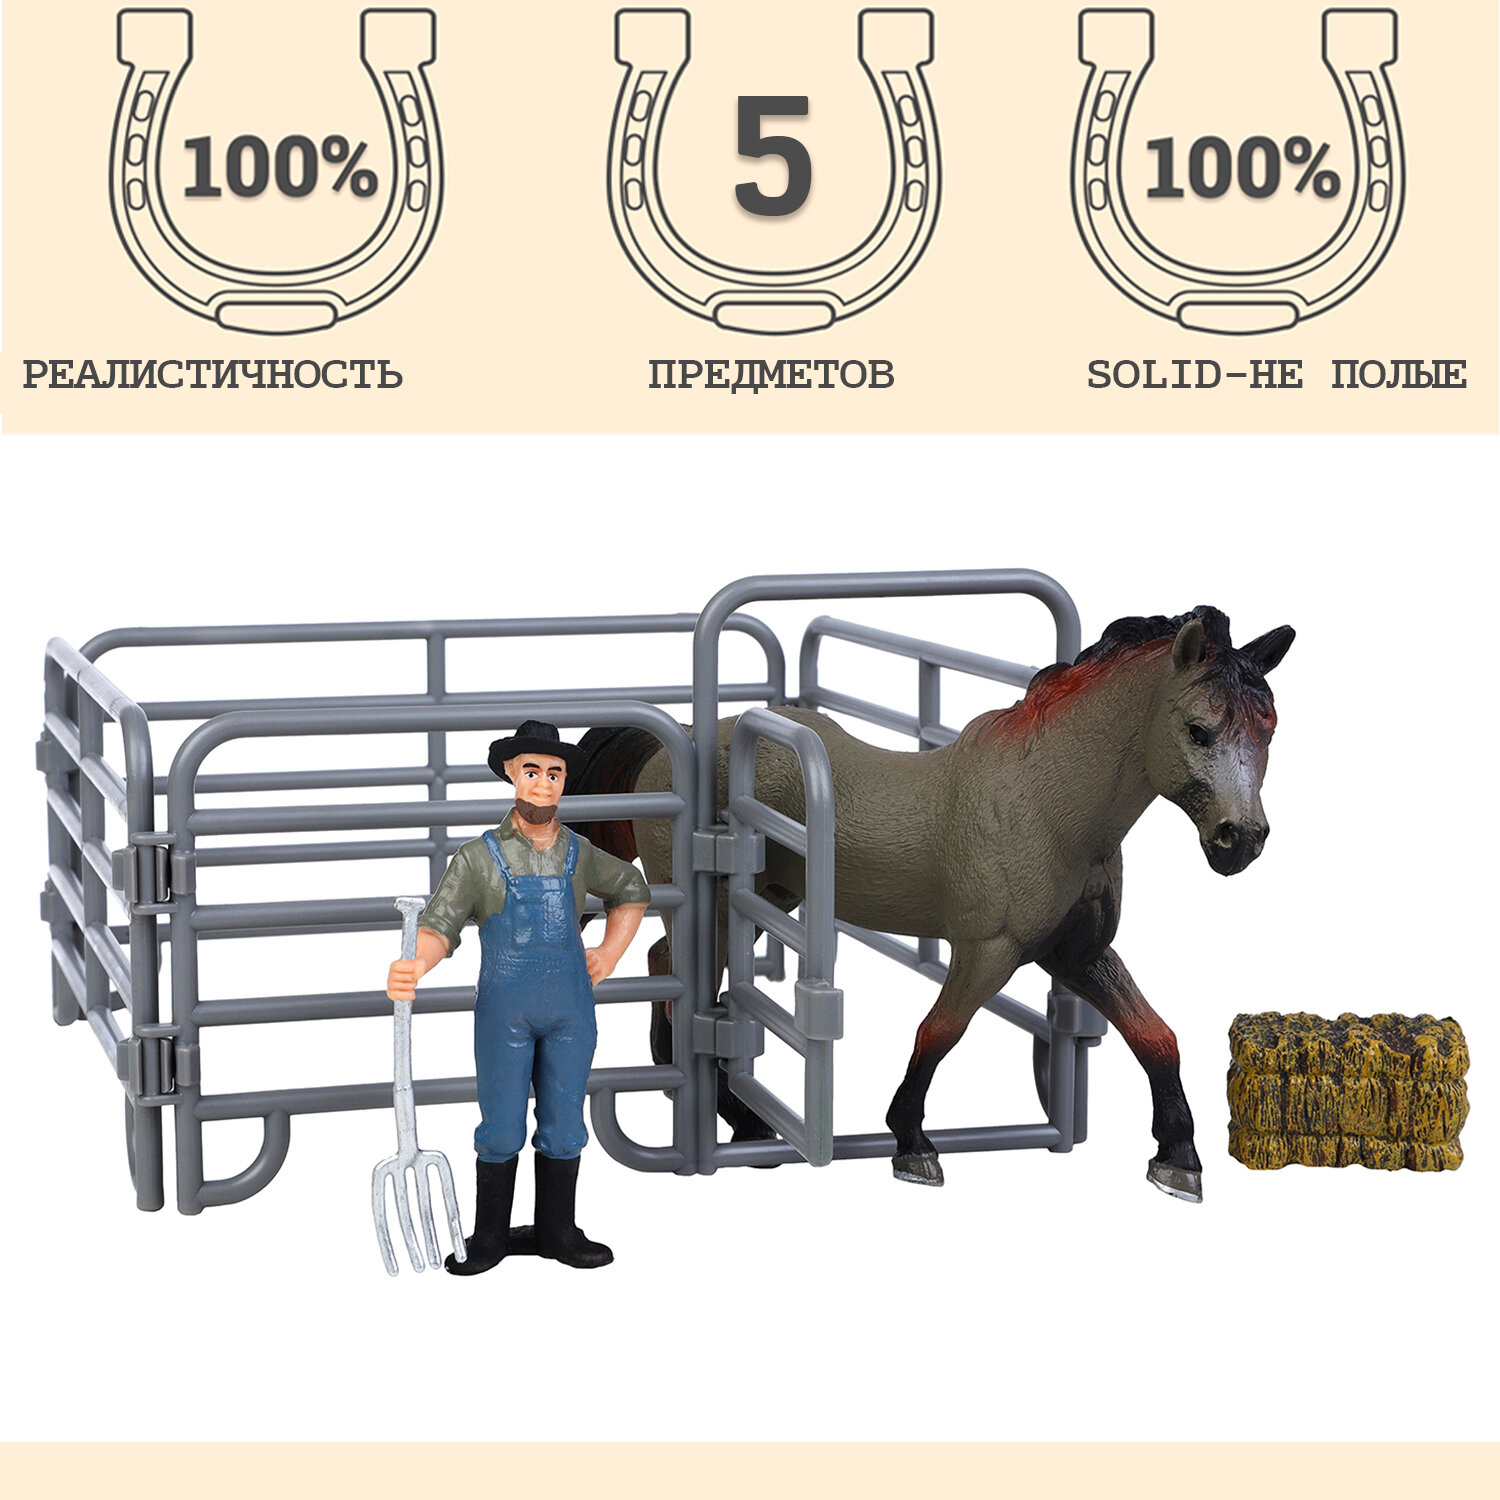 Фигурки животных серии "Мир лошадей": Лошадь, фермер, ограждение, вилы (набор из 5 предметов)